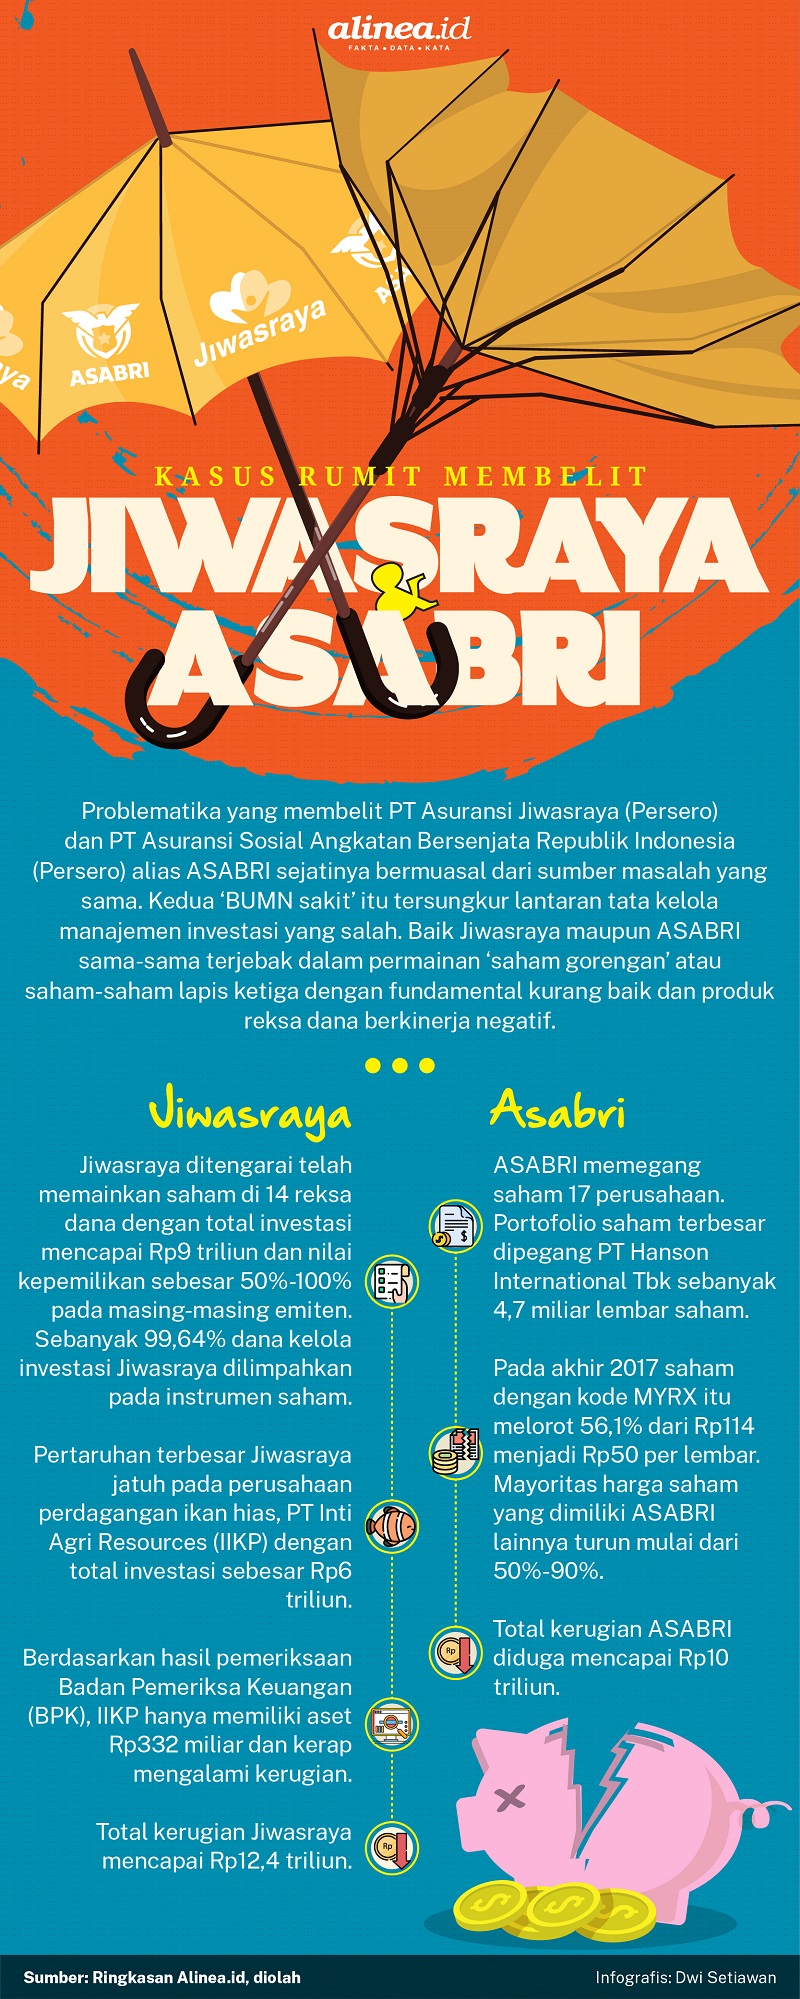 Infografik rangkuman kasus yang membelit Jiwasraya dan ASABRI. Alinea.id/Dwi Setiawan 